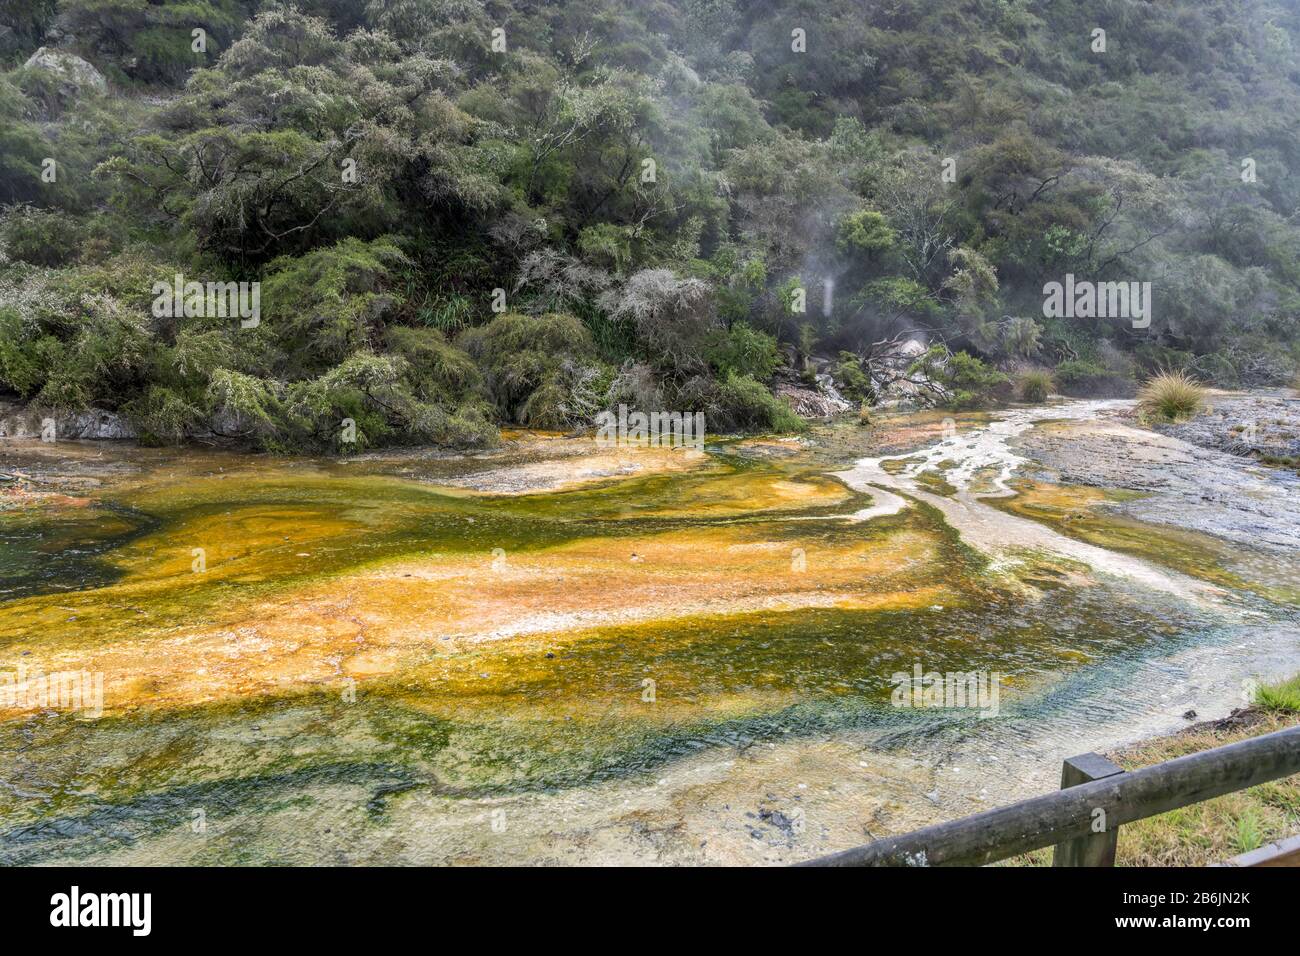 Paysage du parc de la vallée de Waimangu avec de grands sédiments minéraux de couleur incrustée, tiré en lumière de printemps tardive trouble à Rotorua, île du Nord, New Zealan Banque D'Images